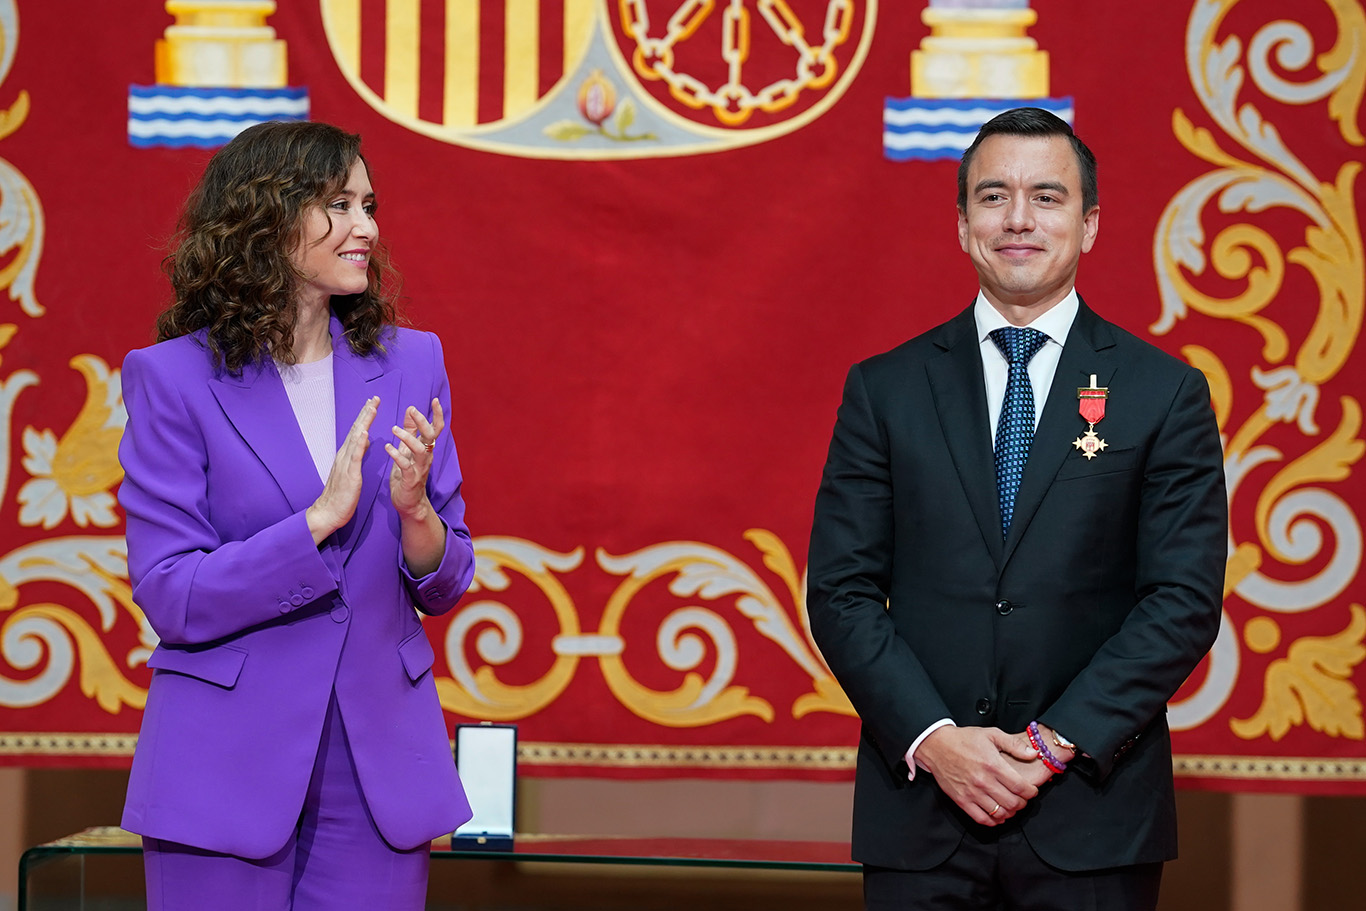 Díaz Ayuso entrega a Daniel Noboa la Meda la Internacional de la Comunidad de Madrid por su defensa de las “tan amenazadas democracia y libertad”